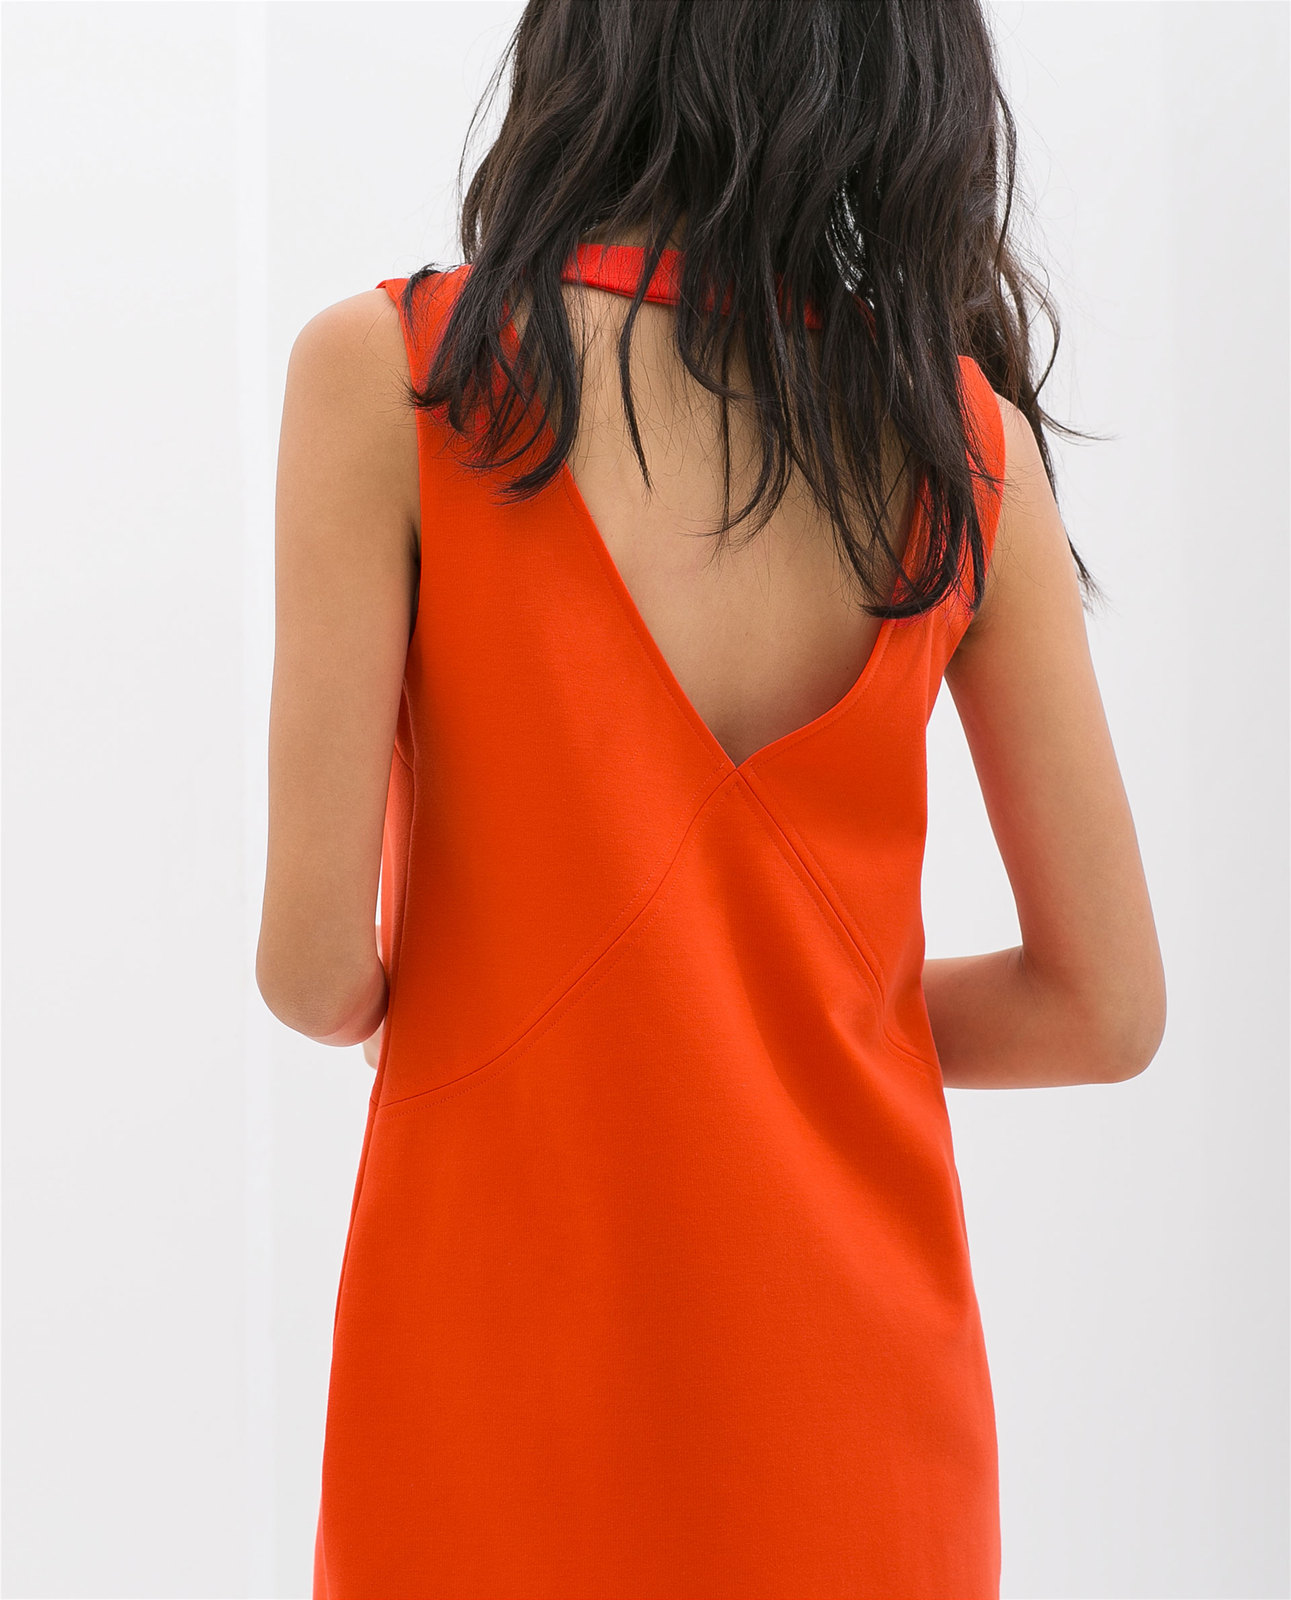 Zara hátul kivágott narancs ruha 2014.4.15 #56187 fotója